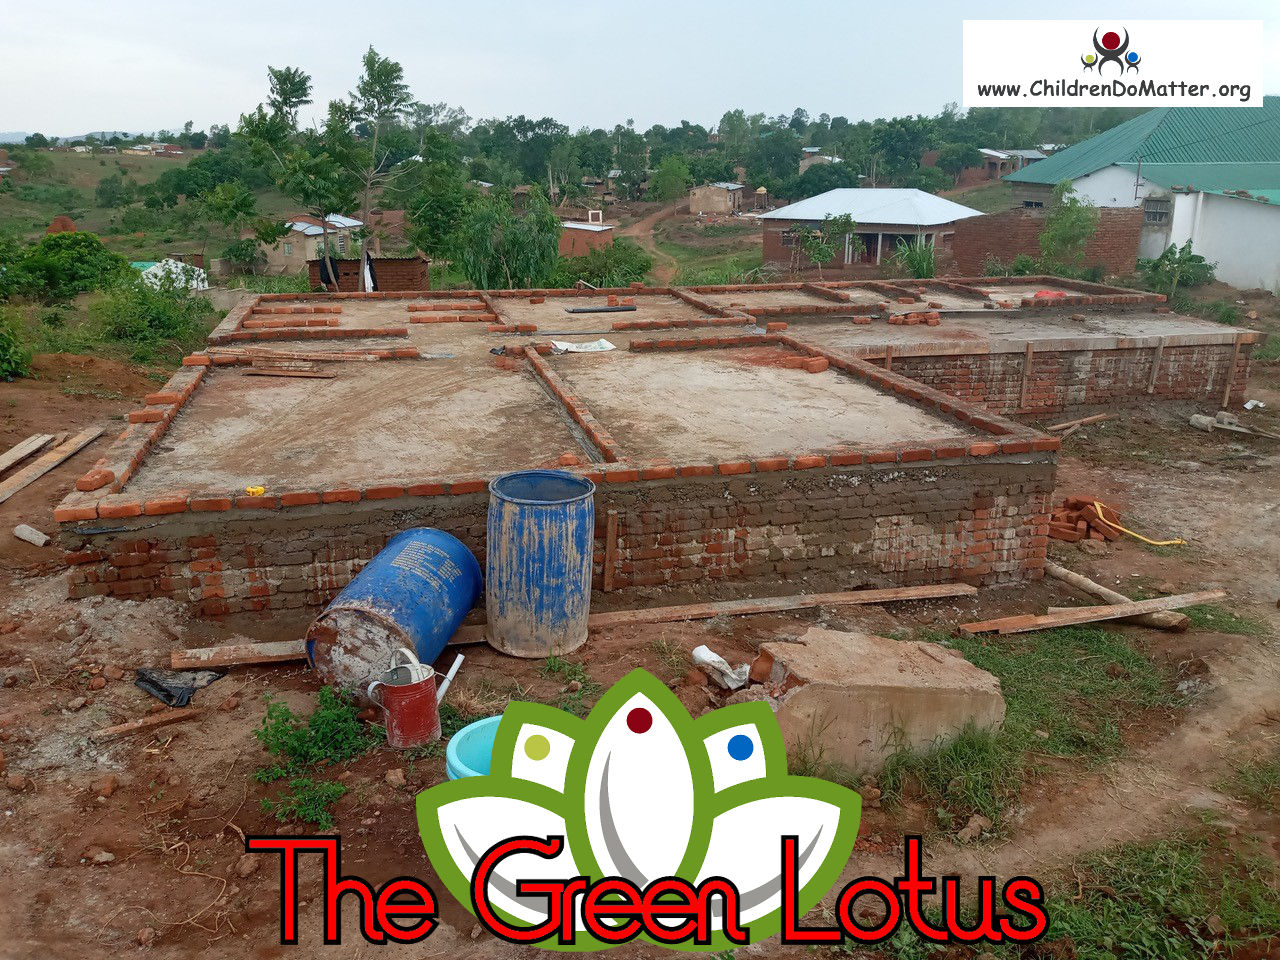 costruzione dell'orfanotrofio casa di accoglienza the green lotus a blantyre malawi - children do matter - 9